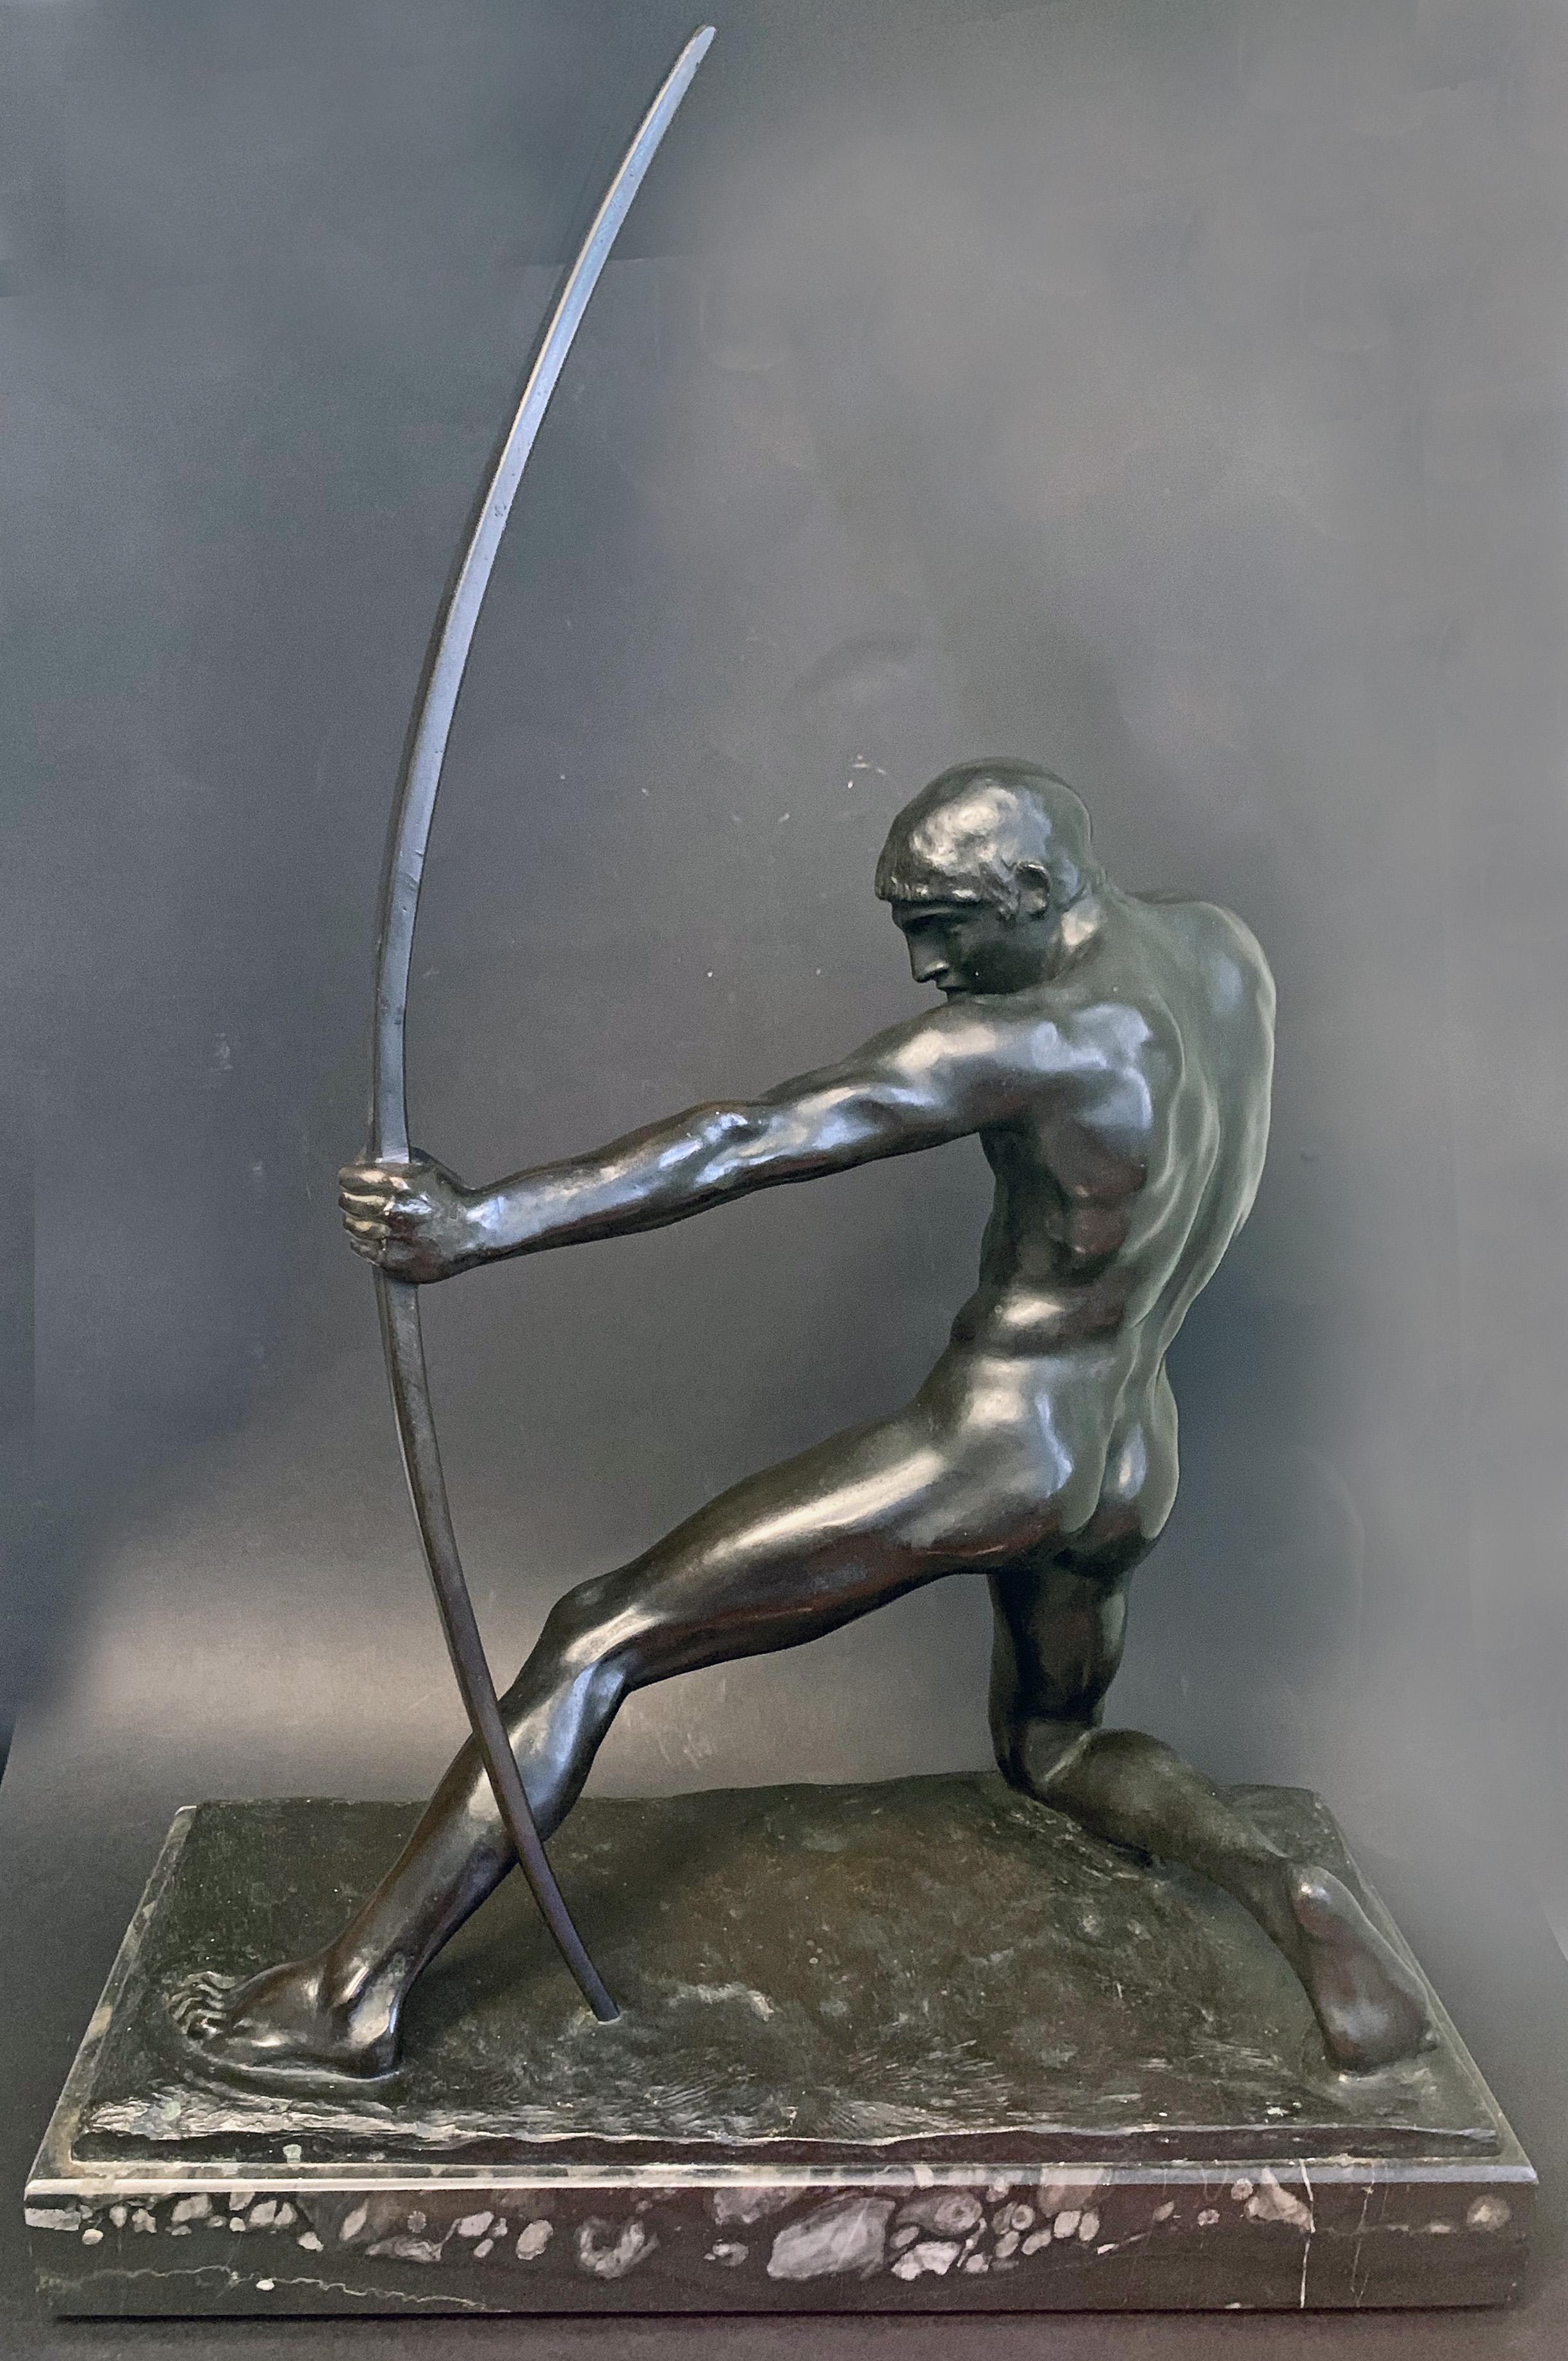 Grande, extrêmement rare et très sensuelle, cette sculpture Art déco en bronze représente un homme nu, agenouillé sur sa jambe droite et s'appuyant sur sa jambe gauche, qui tend son arc pour envoyer sa flèche. L'artiste a présenté son sujet avec une